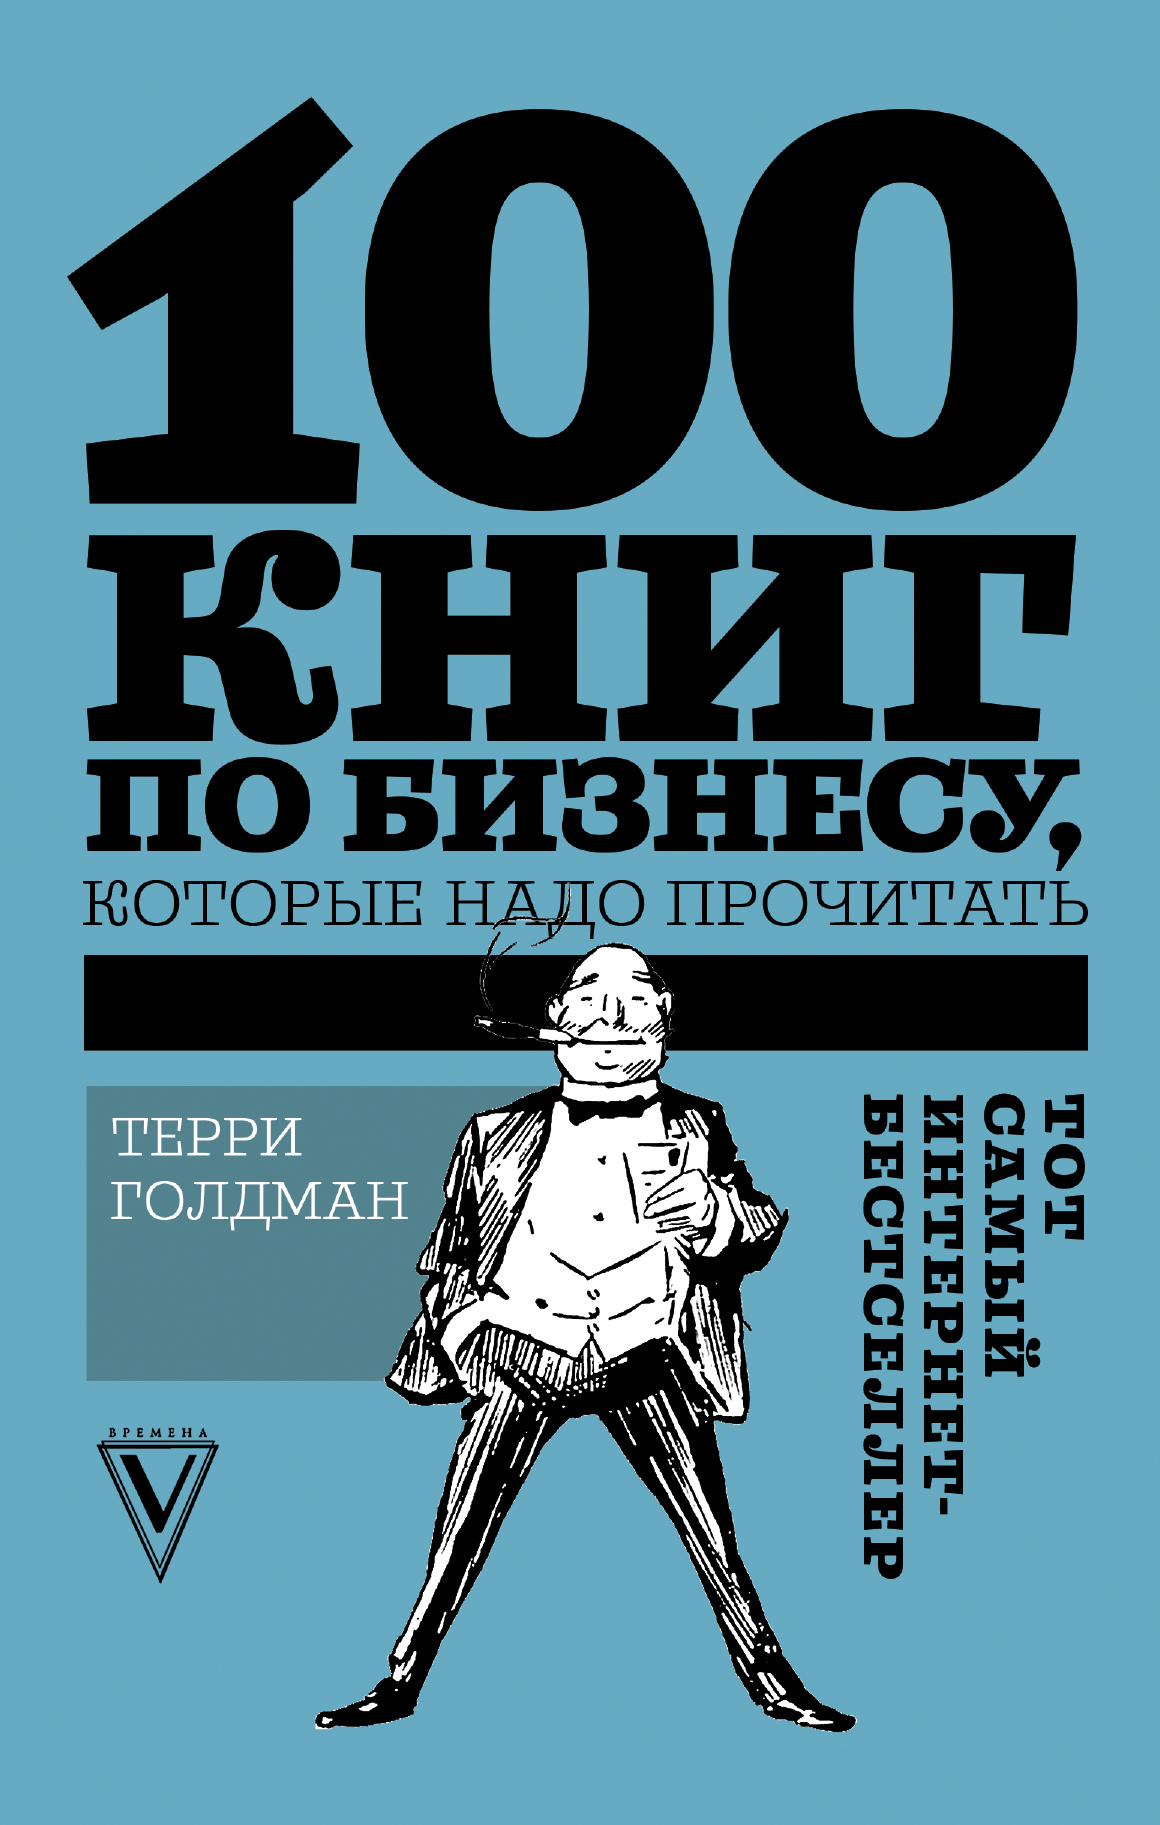 Книга Звезда Рунета. Бизнес 100 книг по бизнесу, которые надо прочитать созданная Терри Голдман может относится к жанру просто о бизнесе. Стоимость электронной книги 100 книг по бизнесу, которые надо прочитать с идентификатором 32825317 составляет 289.00 руб.